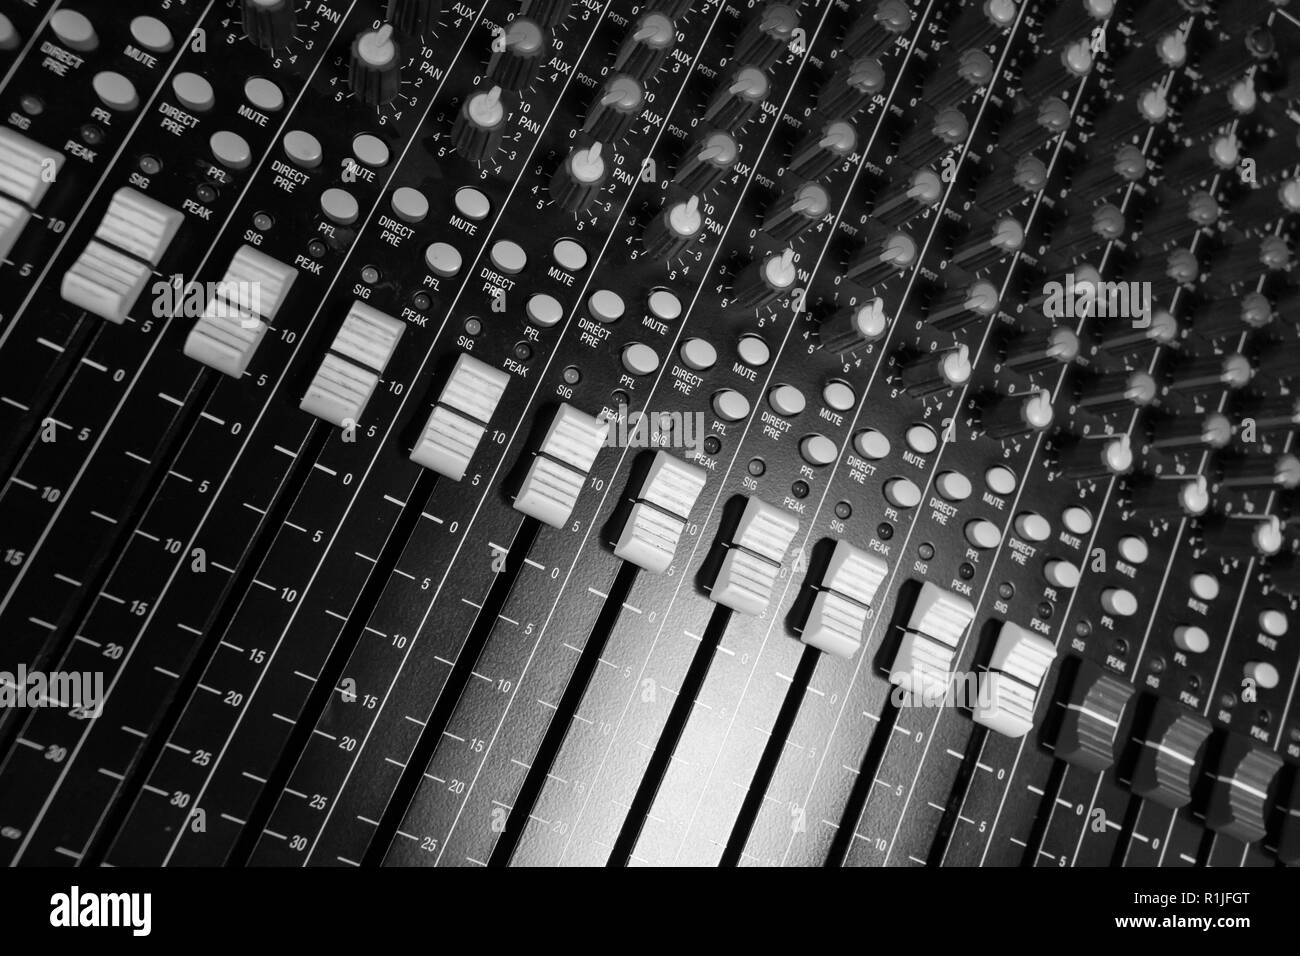 Audio professionale console di mixaggio fader, scrivania nero e bianco controller fader e manopole aux Foto Stock